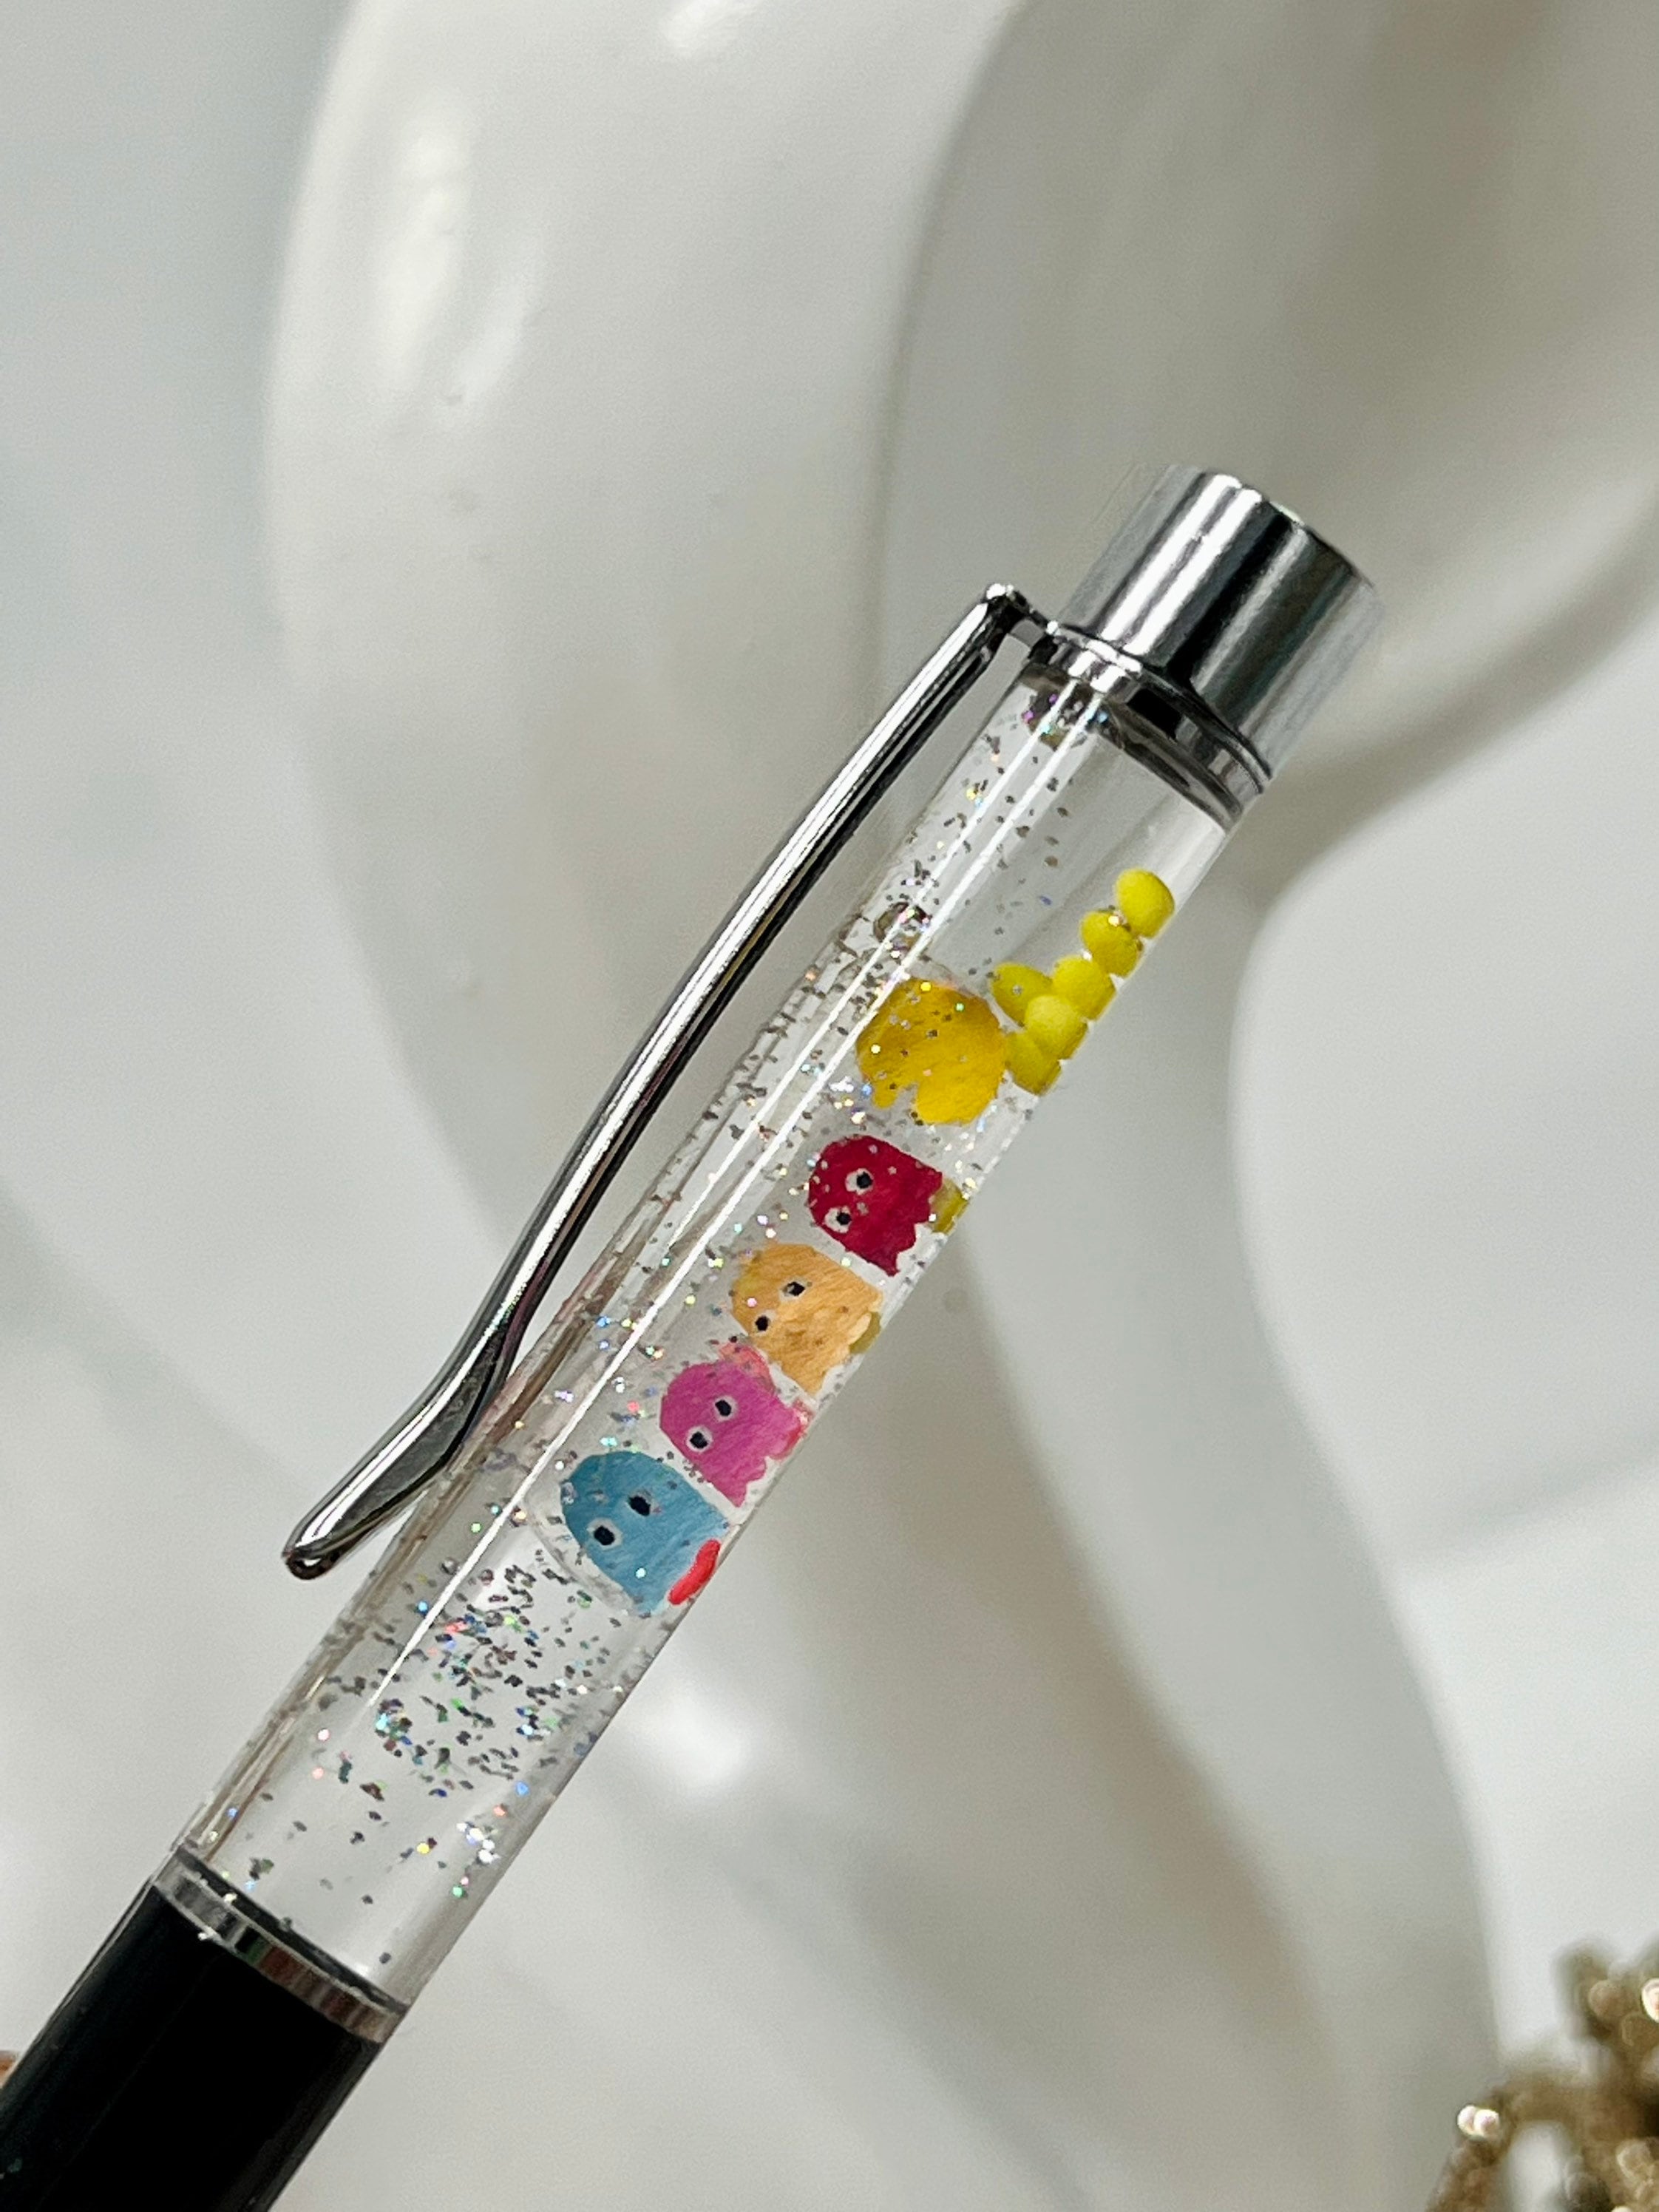 Glitter Pens,girls Best Friend, Floating Glitter Pens, Gifts for Women,  Planner Pen, Journal Pen, Ballpoint Pen, Refillable Pen 